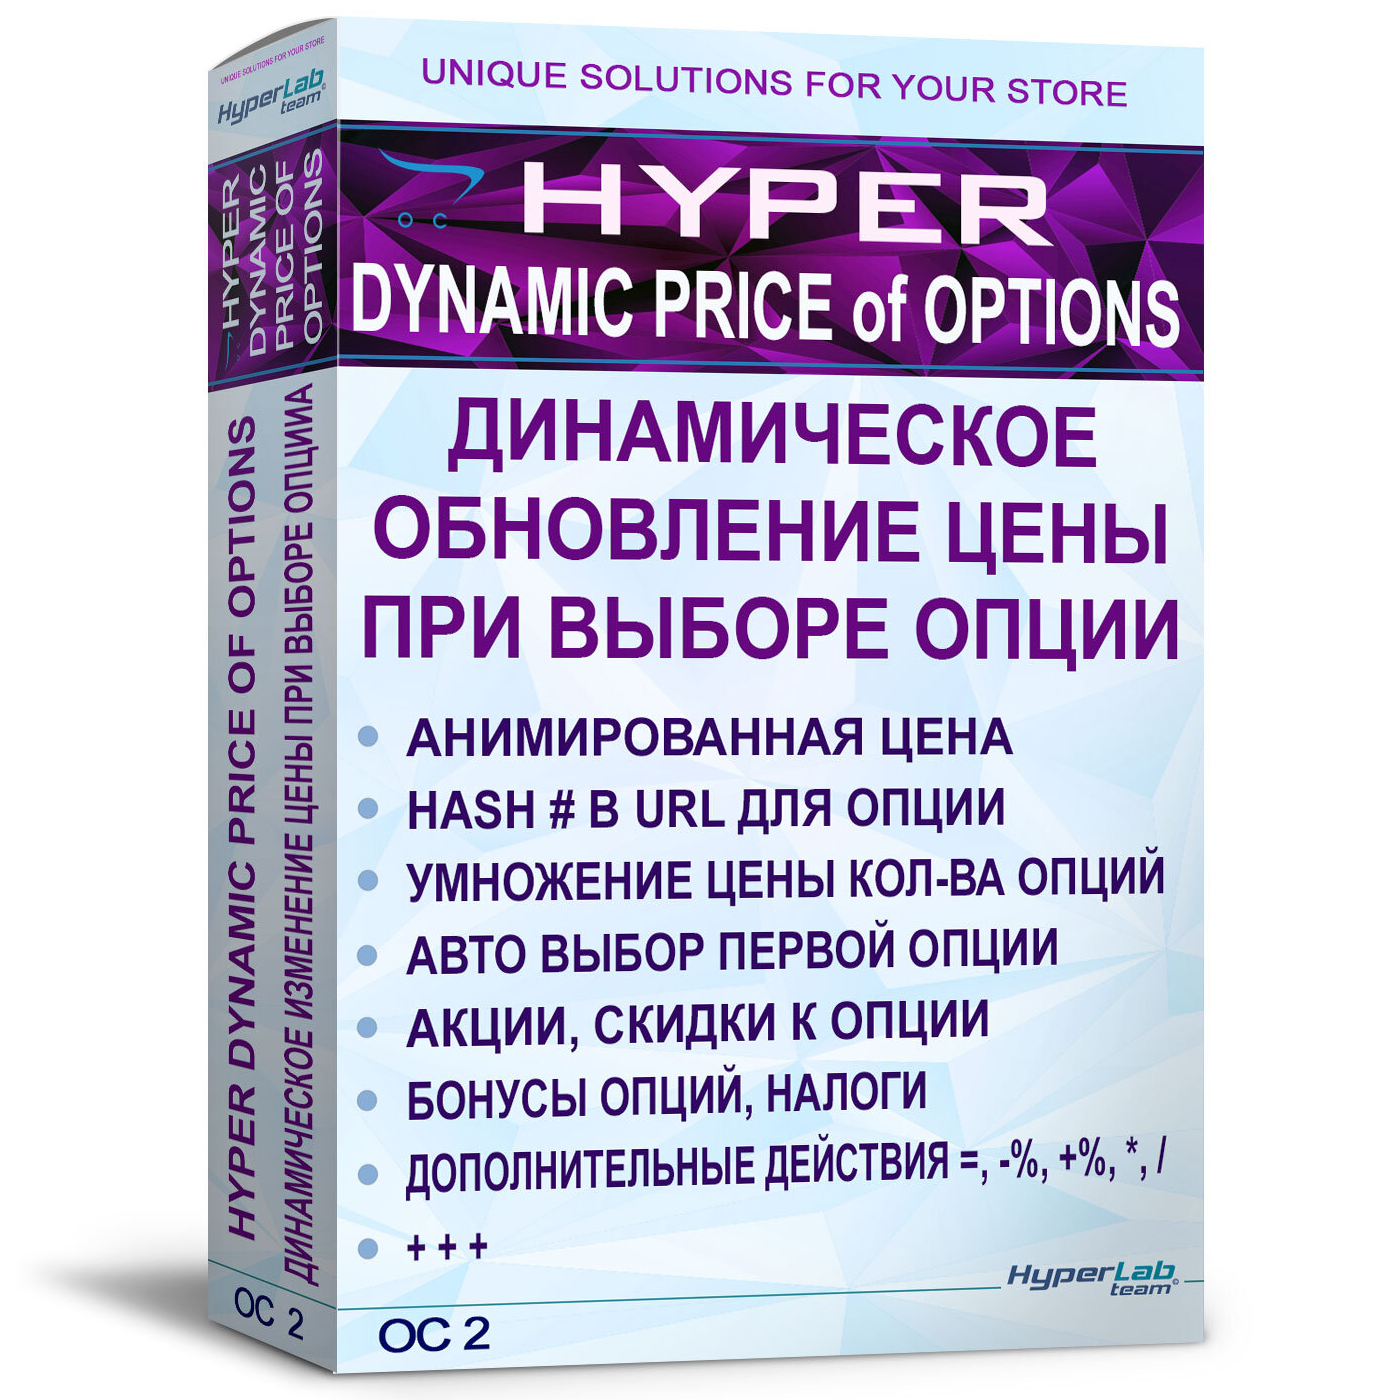 Обновление цены при выборе опции, без AJAX - HYPER Dynamic price of options OC 2